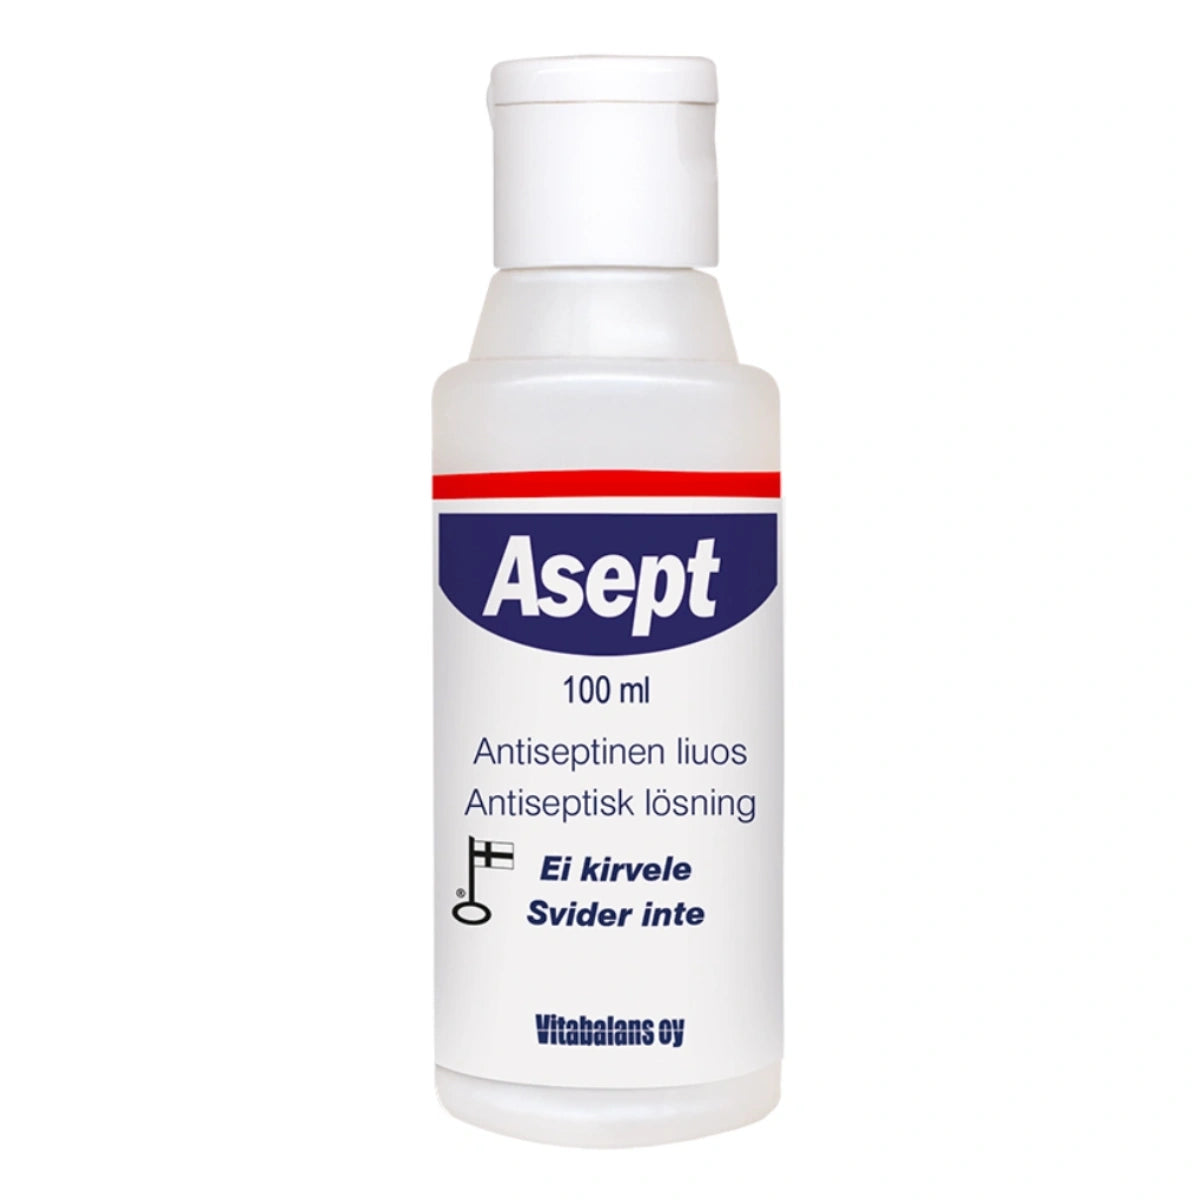 ASEPT antiseptinen liuos 100 ml ei kirvele